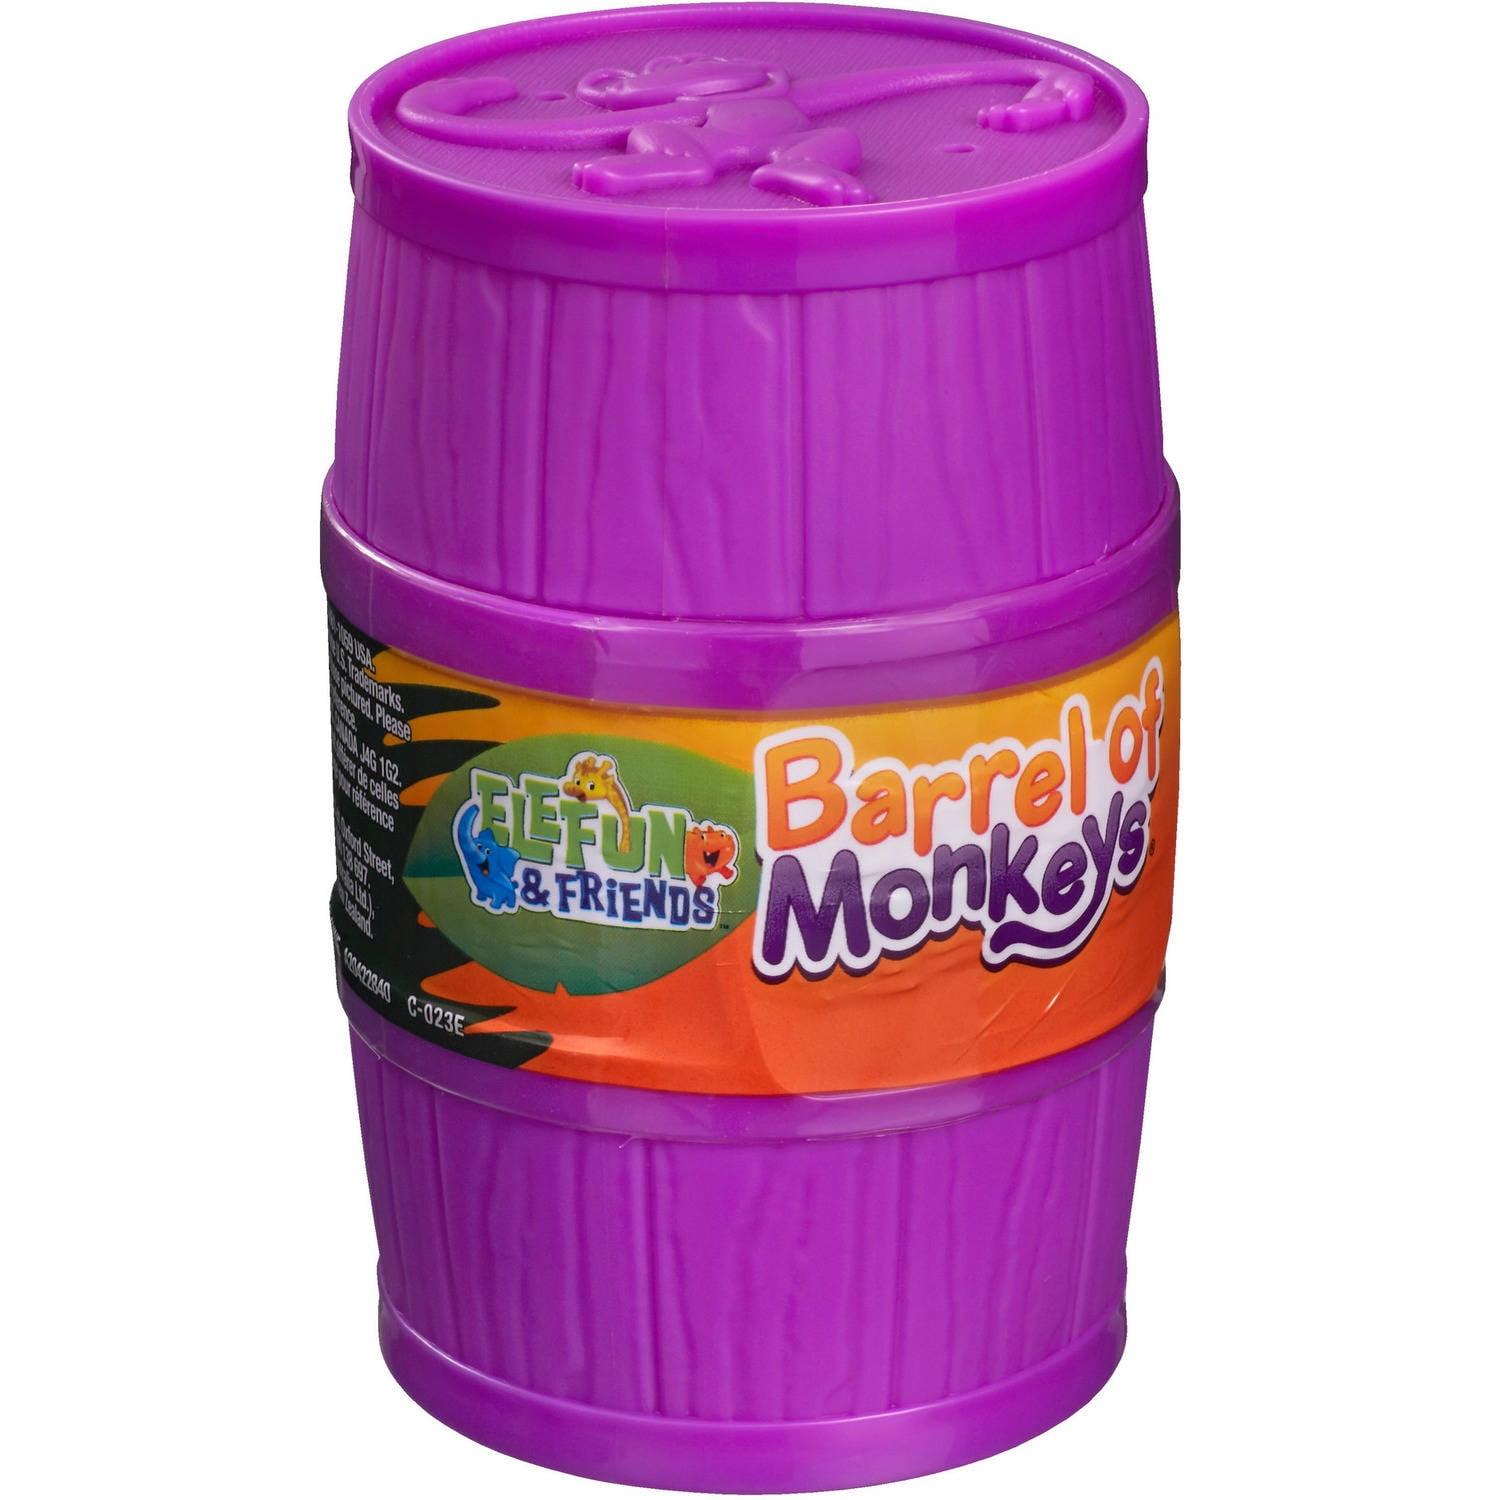 Elefun & Friends Barrel of Monkeys 